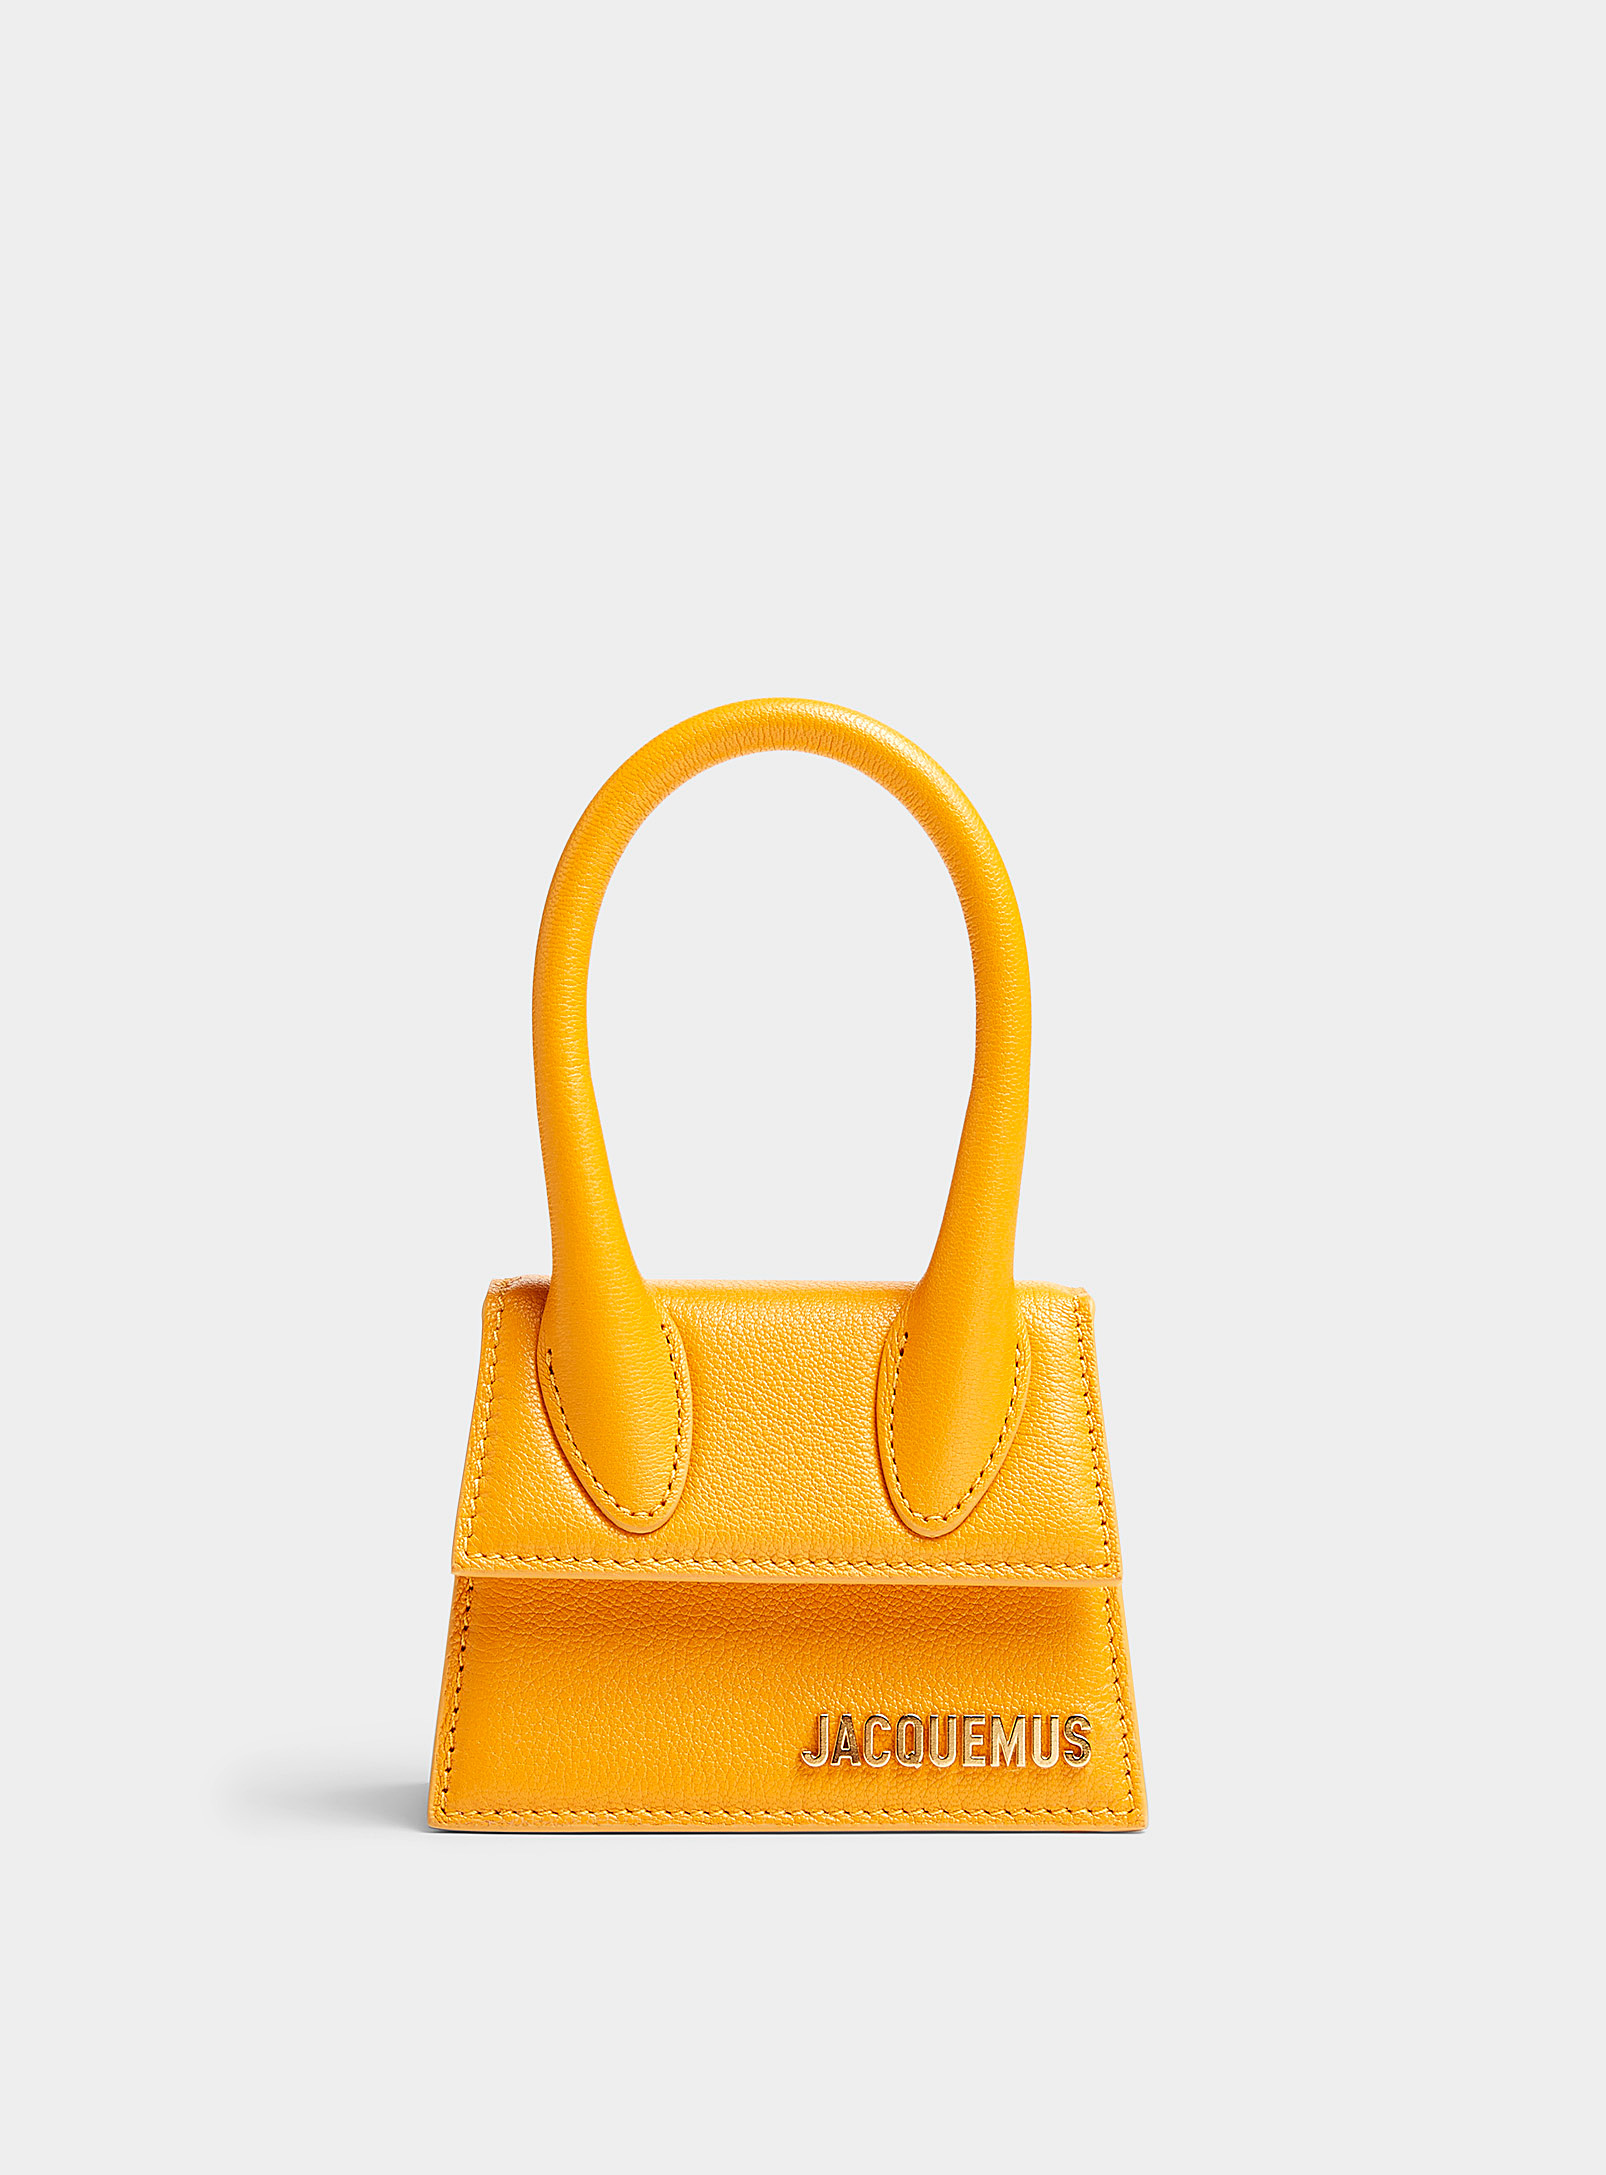 Jacquemus - Le minisac Chiquito orange